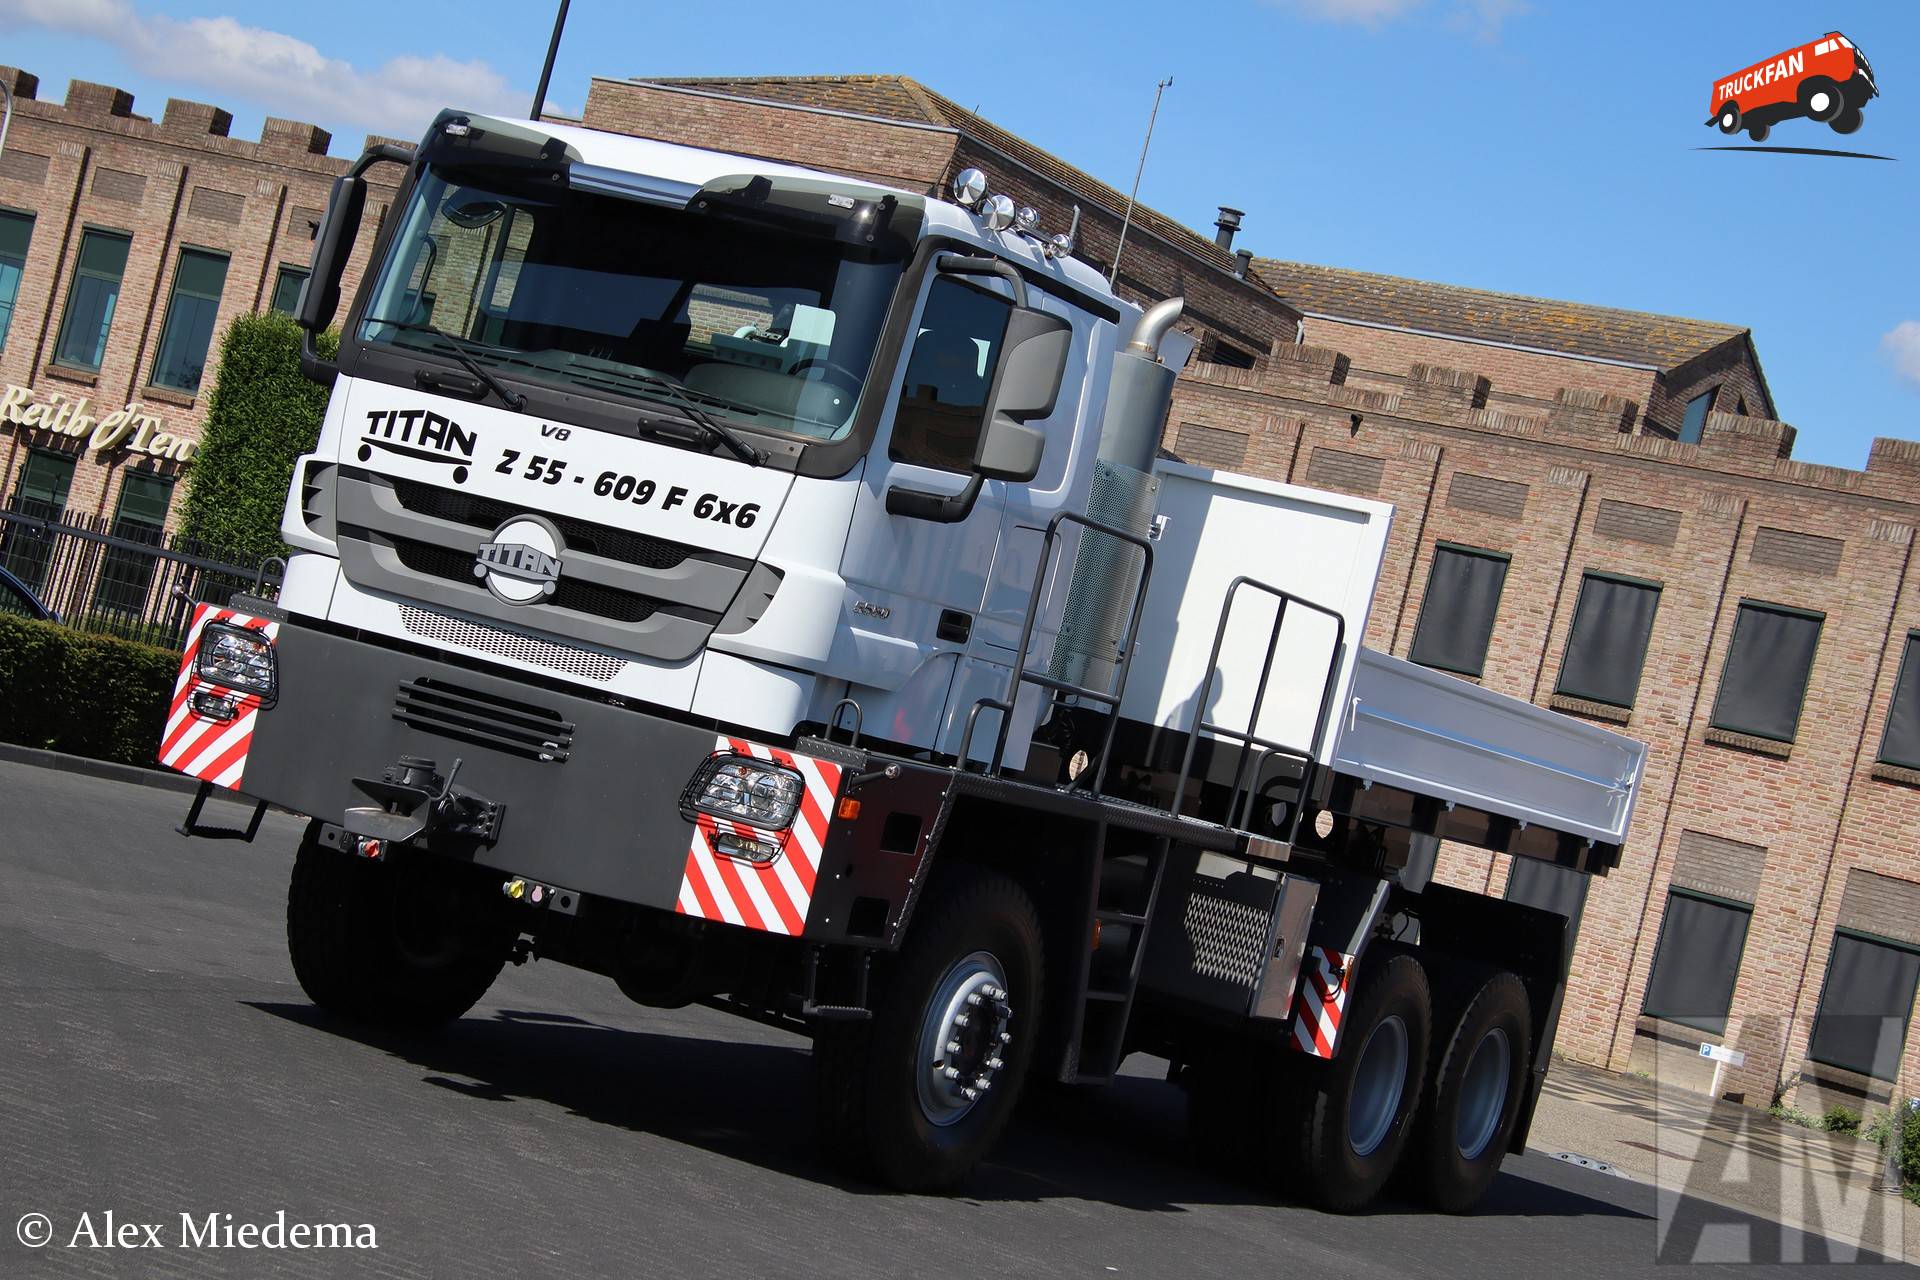 Hier zie je Geurts Trucks (Andelst) × met een Titan Z55-609F, opgebouwd voor speciaal transport.